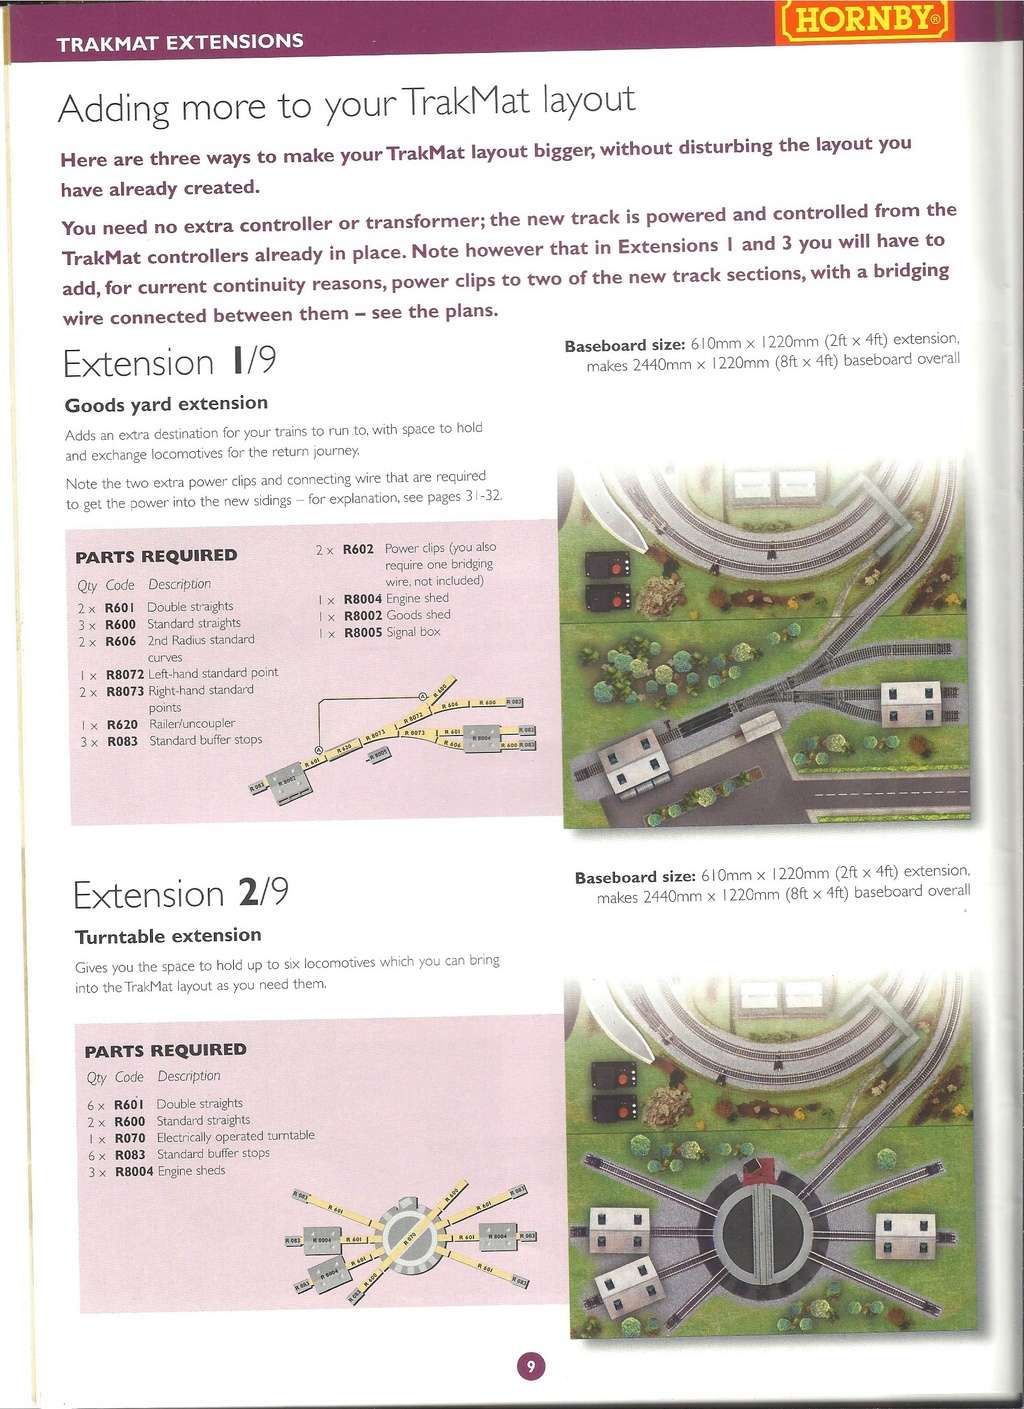 [HORNBY 2002] Plans de réseaux 9ème édition 2002 Hornb138